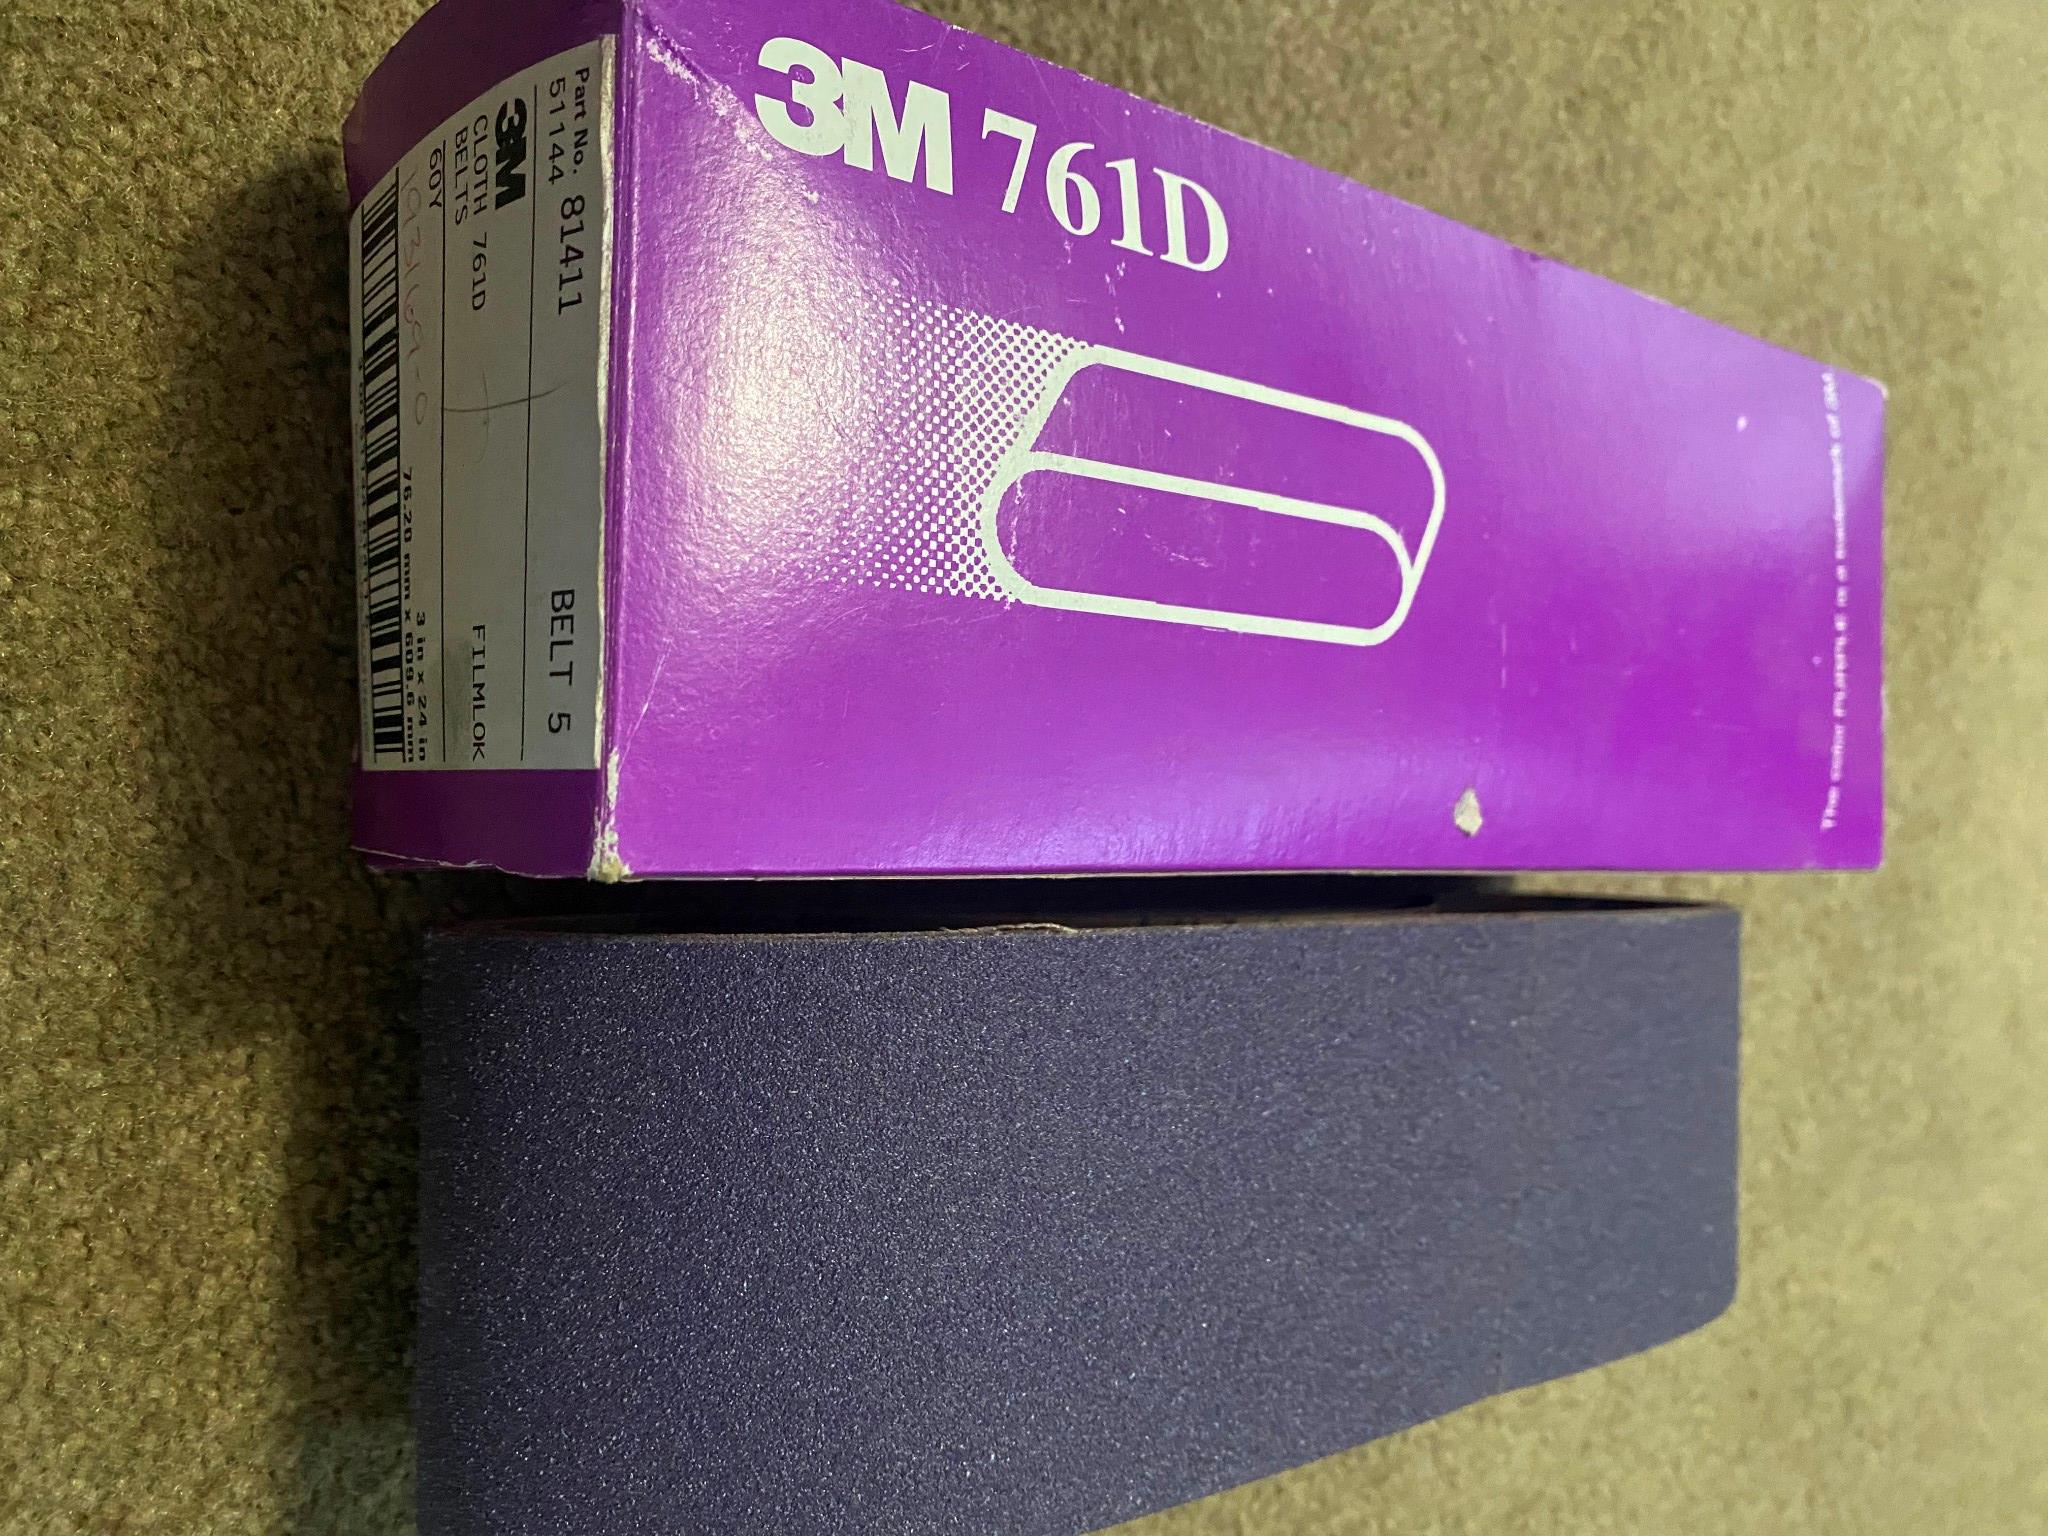 3M Cloth 761D Sanding Belts 60Y 3" W x 24" L - 81411 Purple (5 Pack)